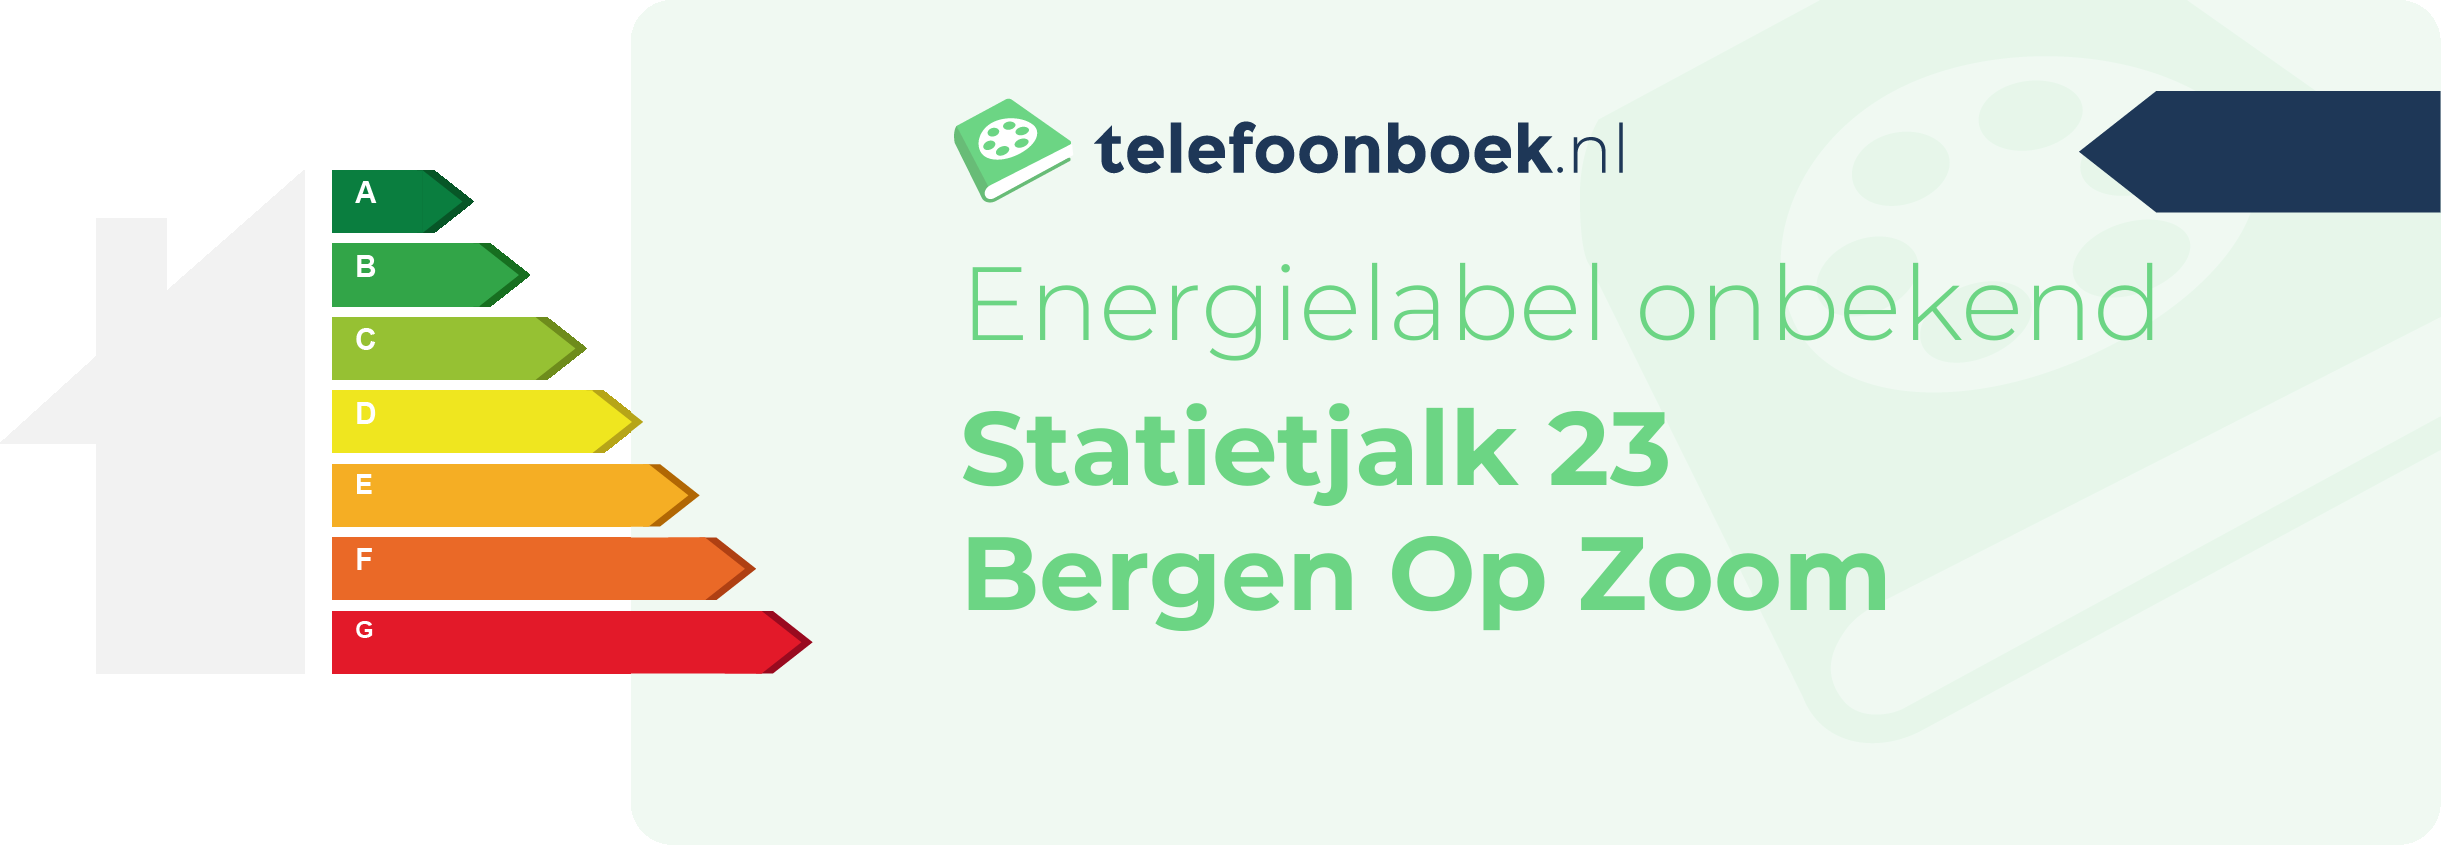 Energielabel Statietjalk 23 Bergen Op Zoom